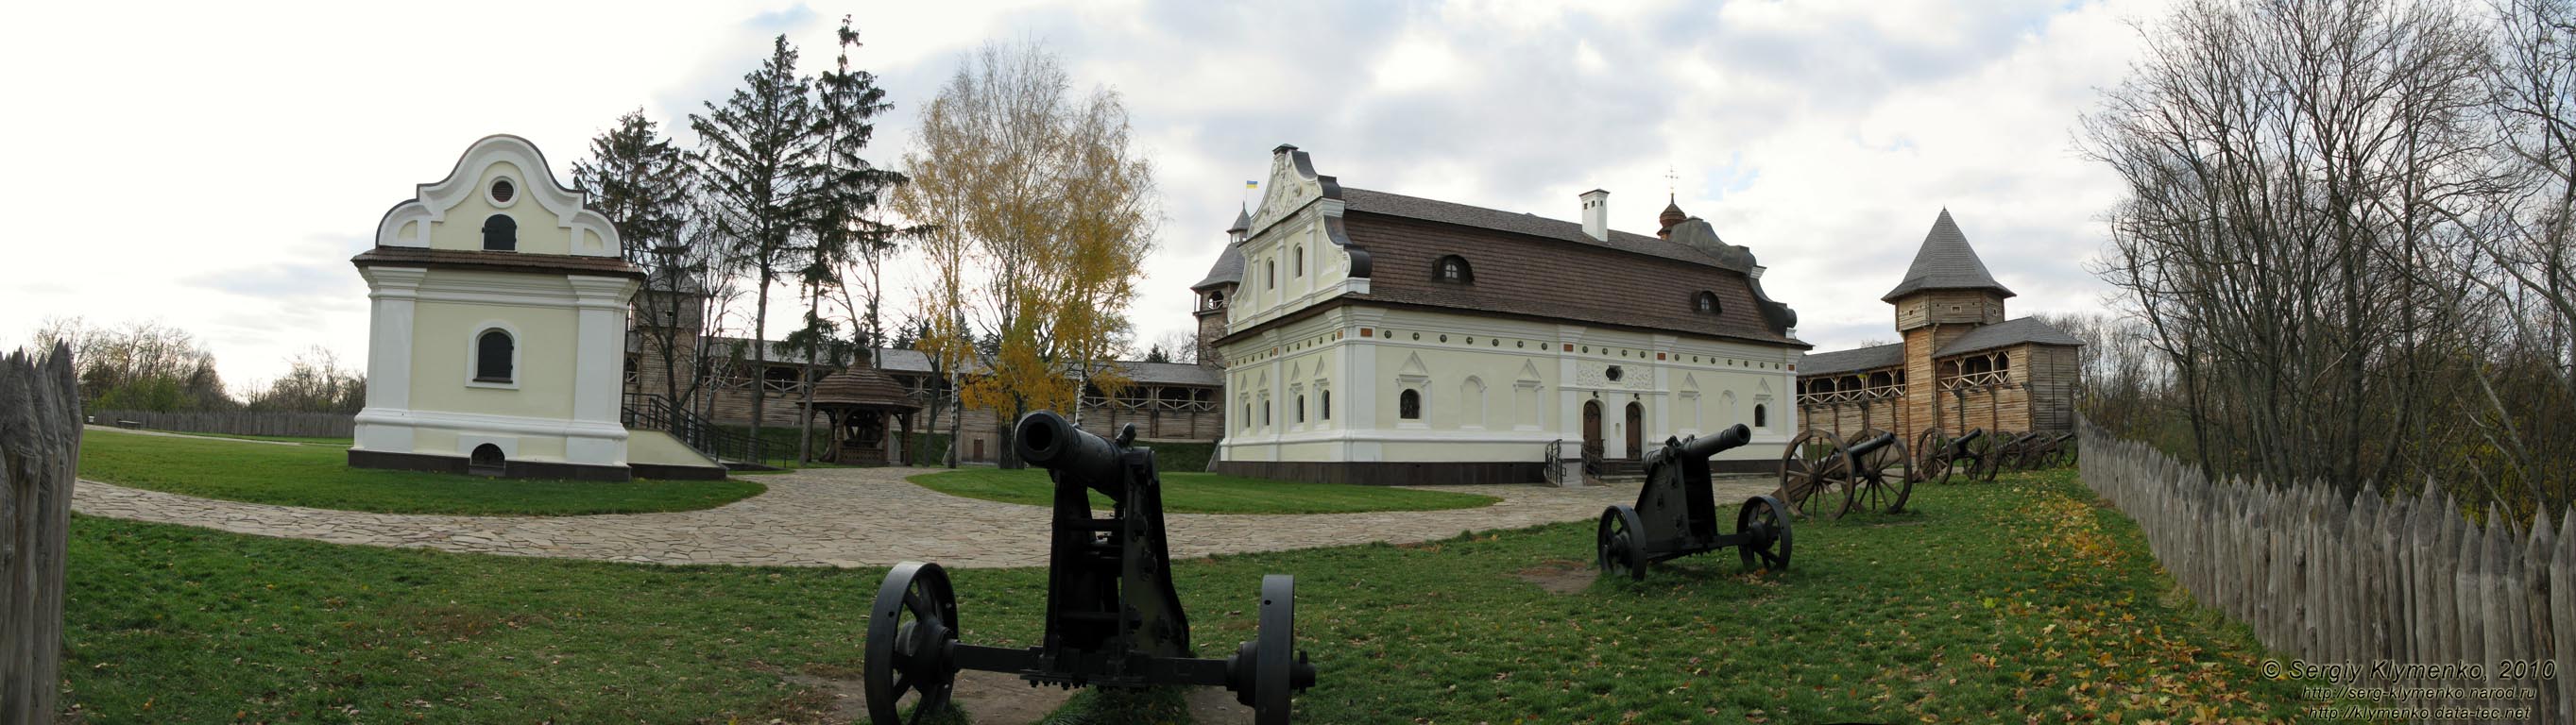 Батуринская цитадель (реконструкция, 2009 год). Фрагмент (панорама ~120°).